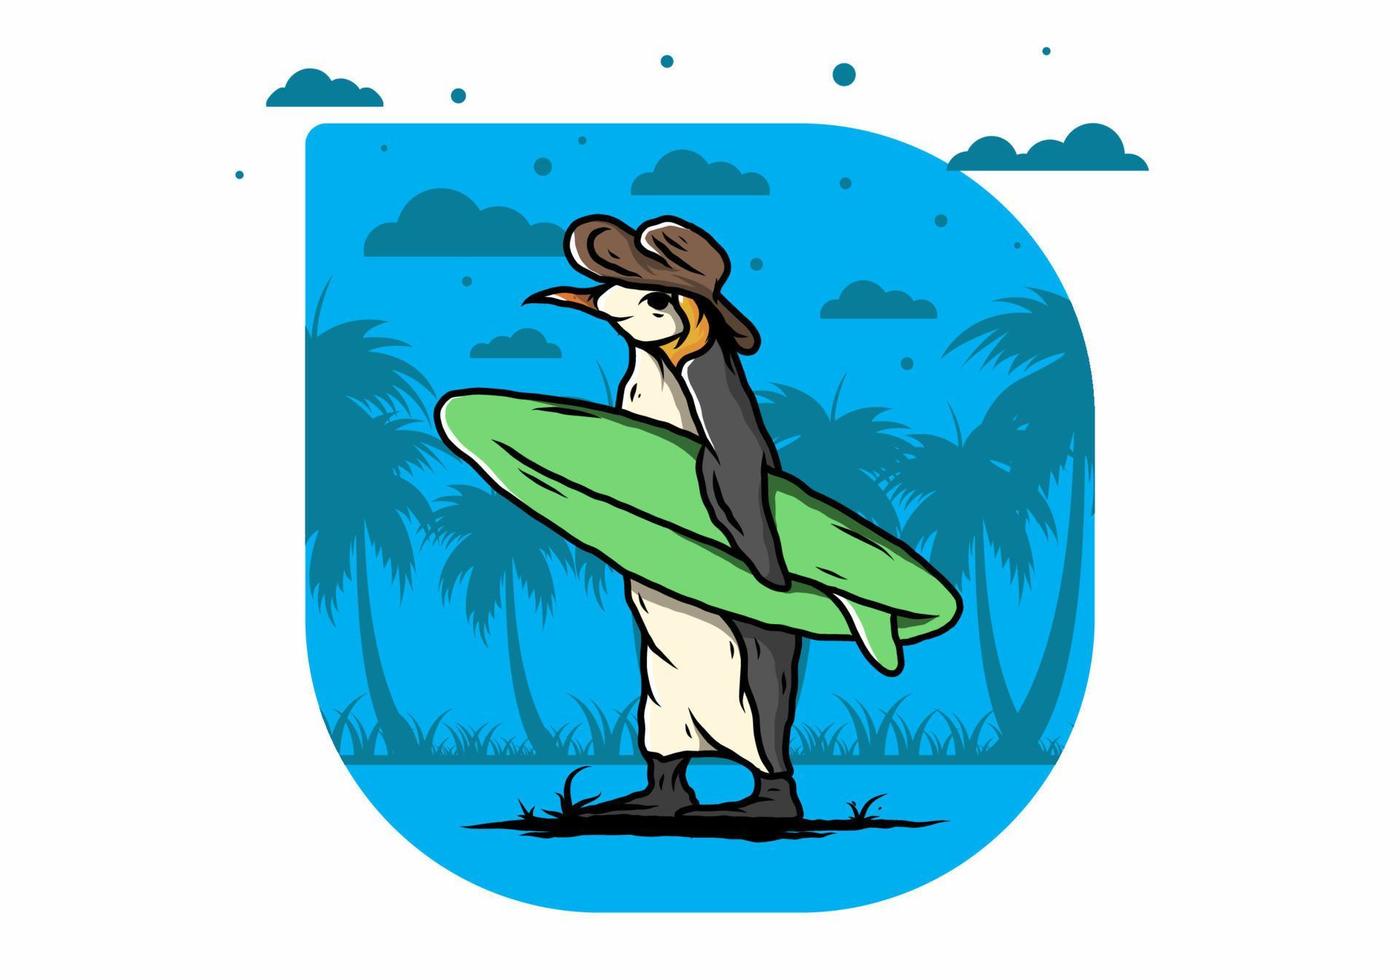 niedlicher pinguin, der ein surfbrett auf der strandillustration trägt vektor